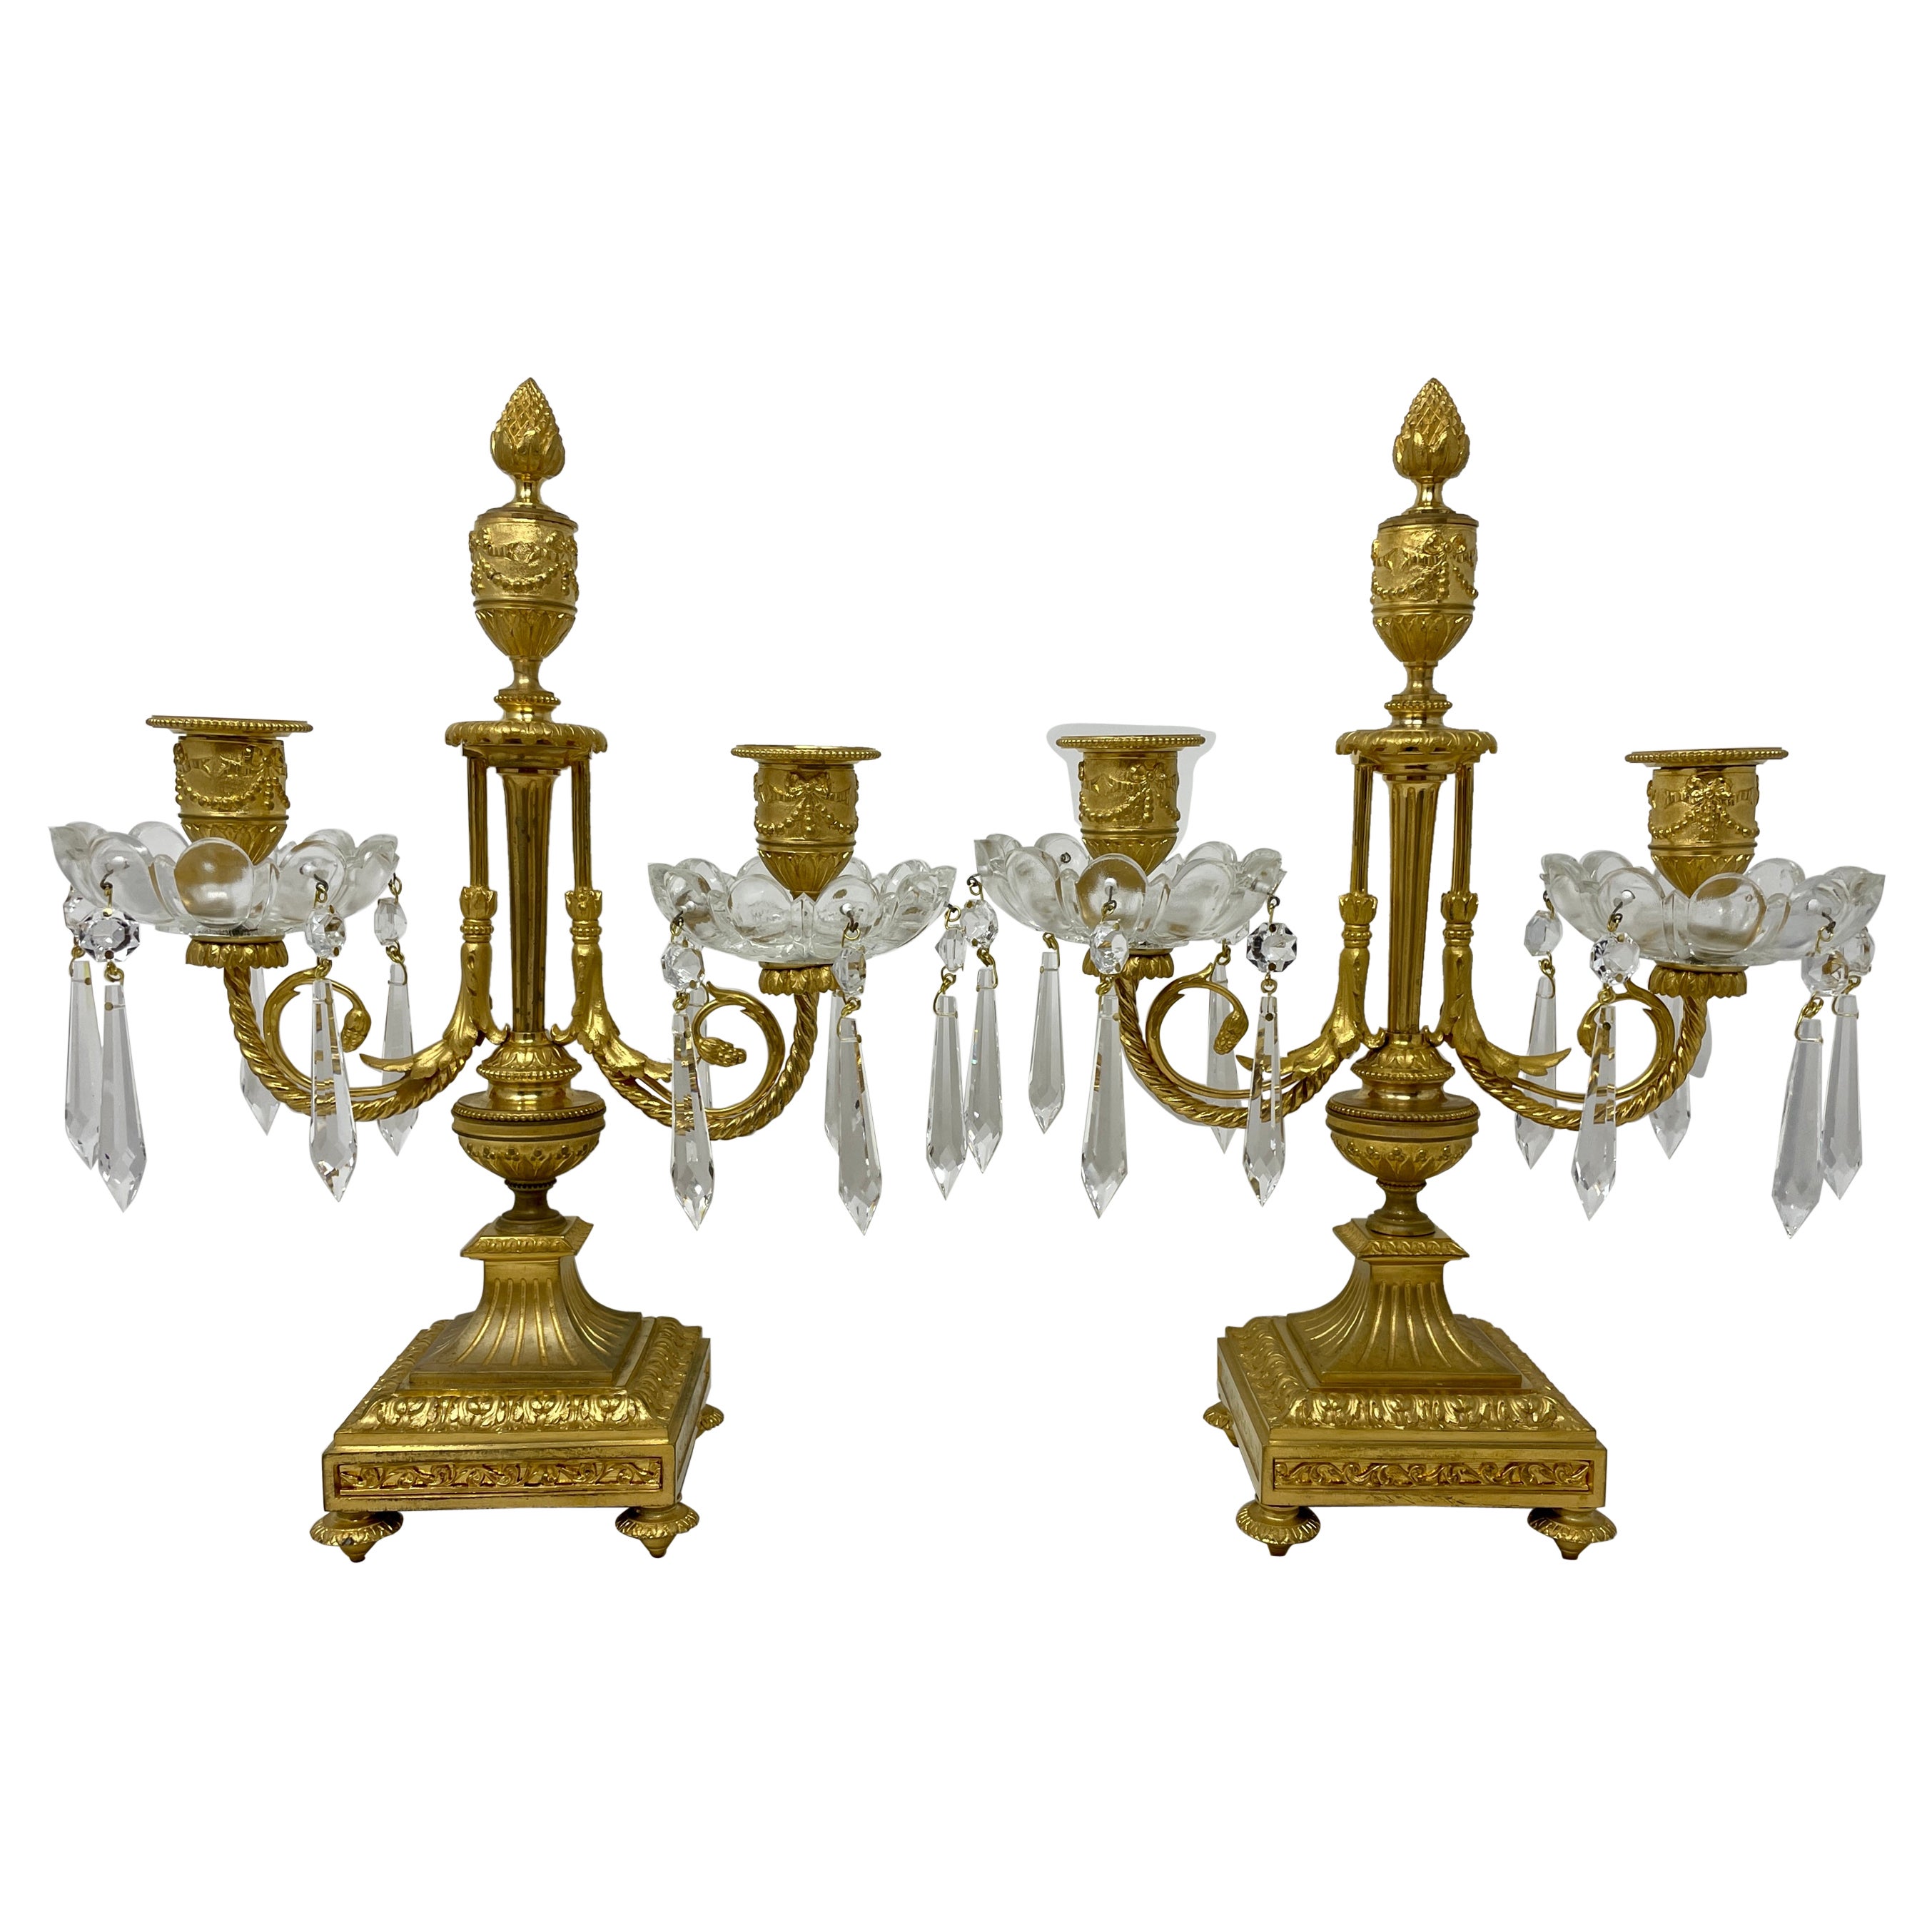 Paire de candélabres français anciens en bronze doré et cristal, vers 1875-1895.